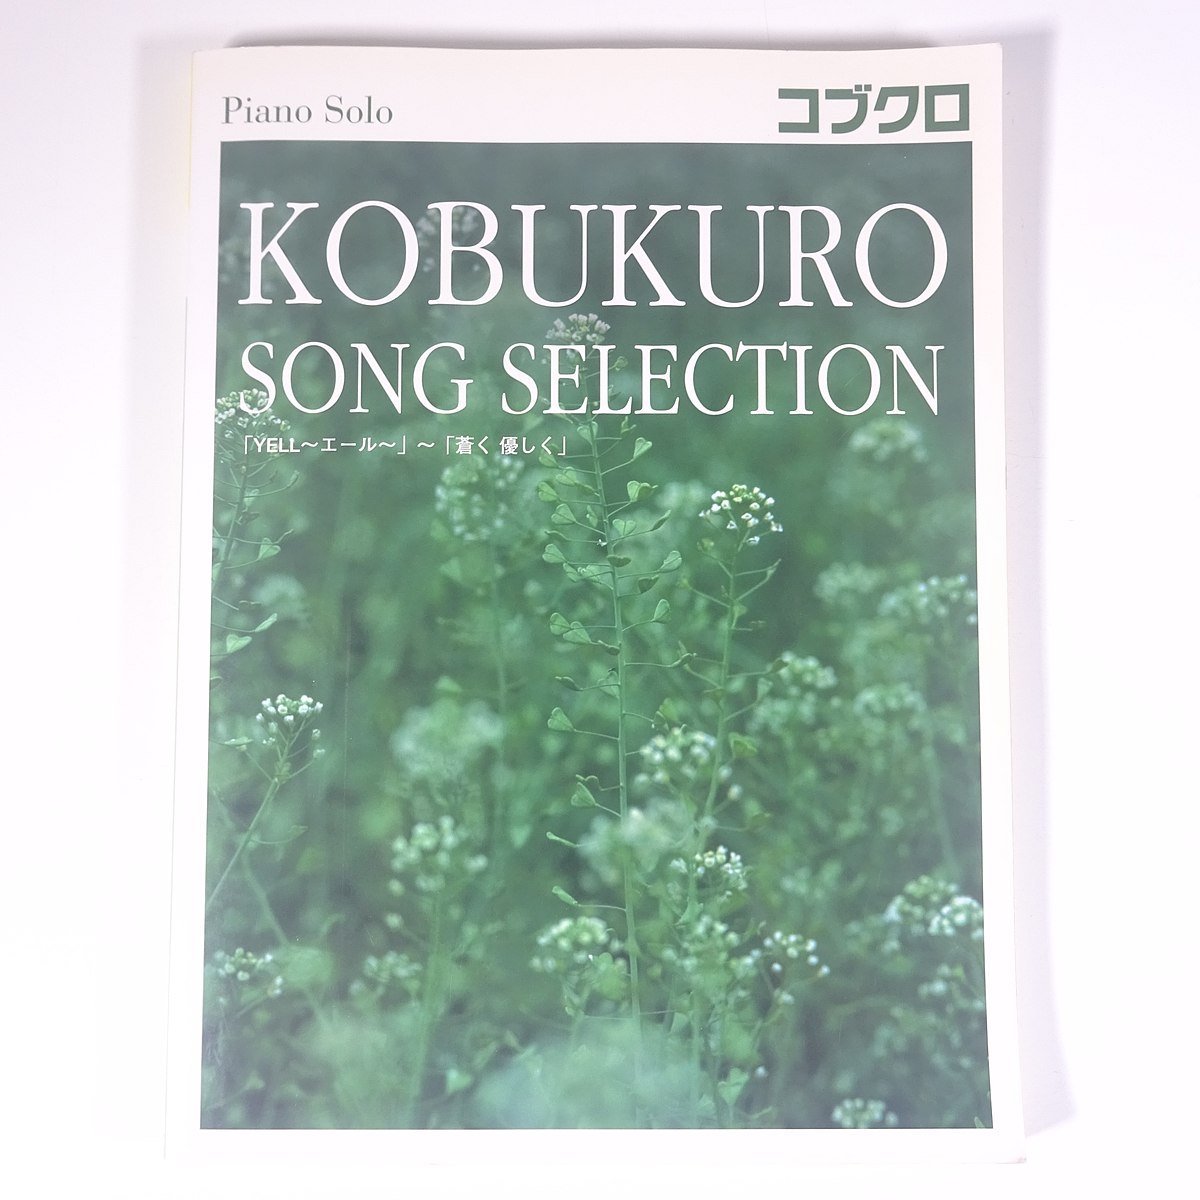 [ музыкальное сопровождение ] Kobukuro SONG SELECTION фортепьяно * Solo средний класс YAMAHA Yamaha 2008 большой книга@ музыка Японская музыка фортепьяно [YELLe-ru]~[.. мягко ]